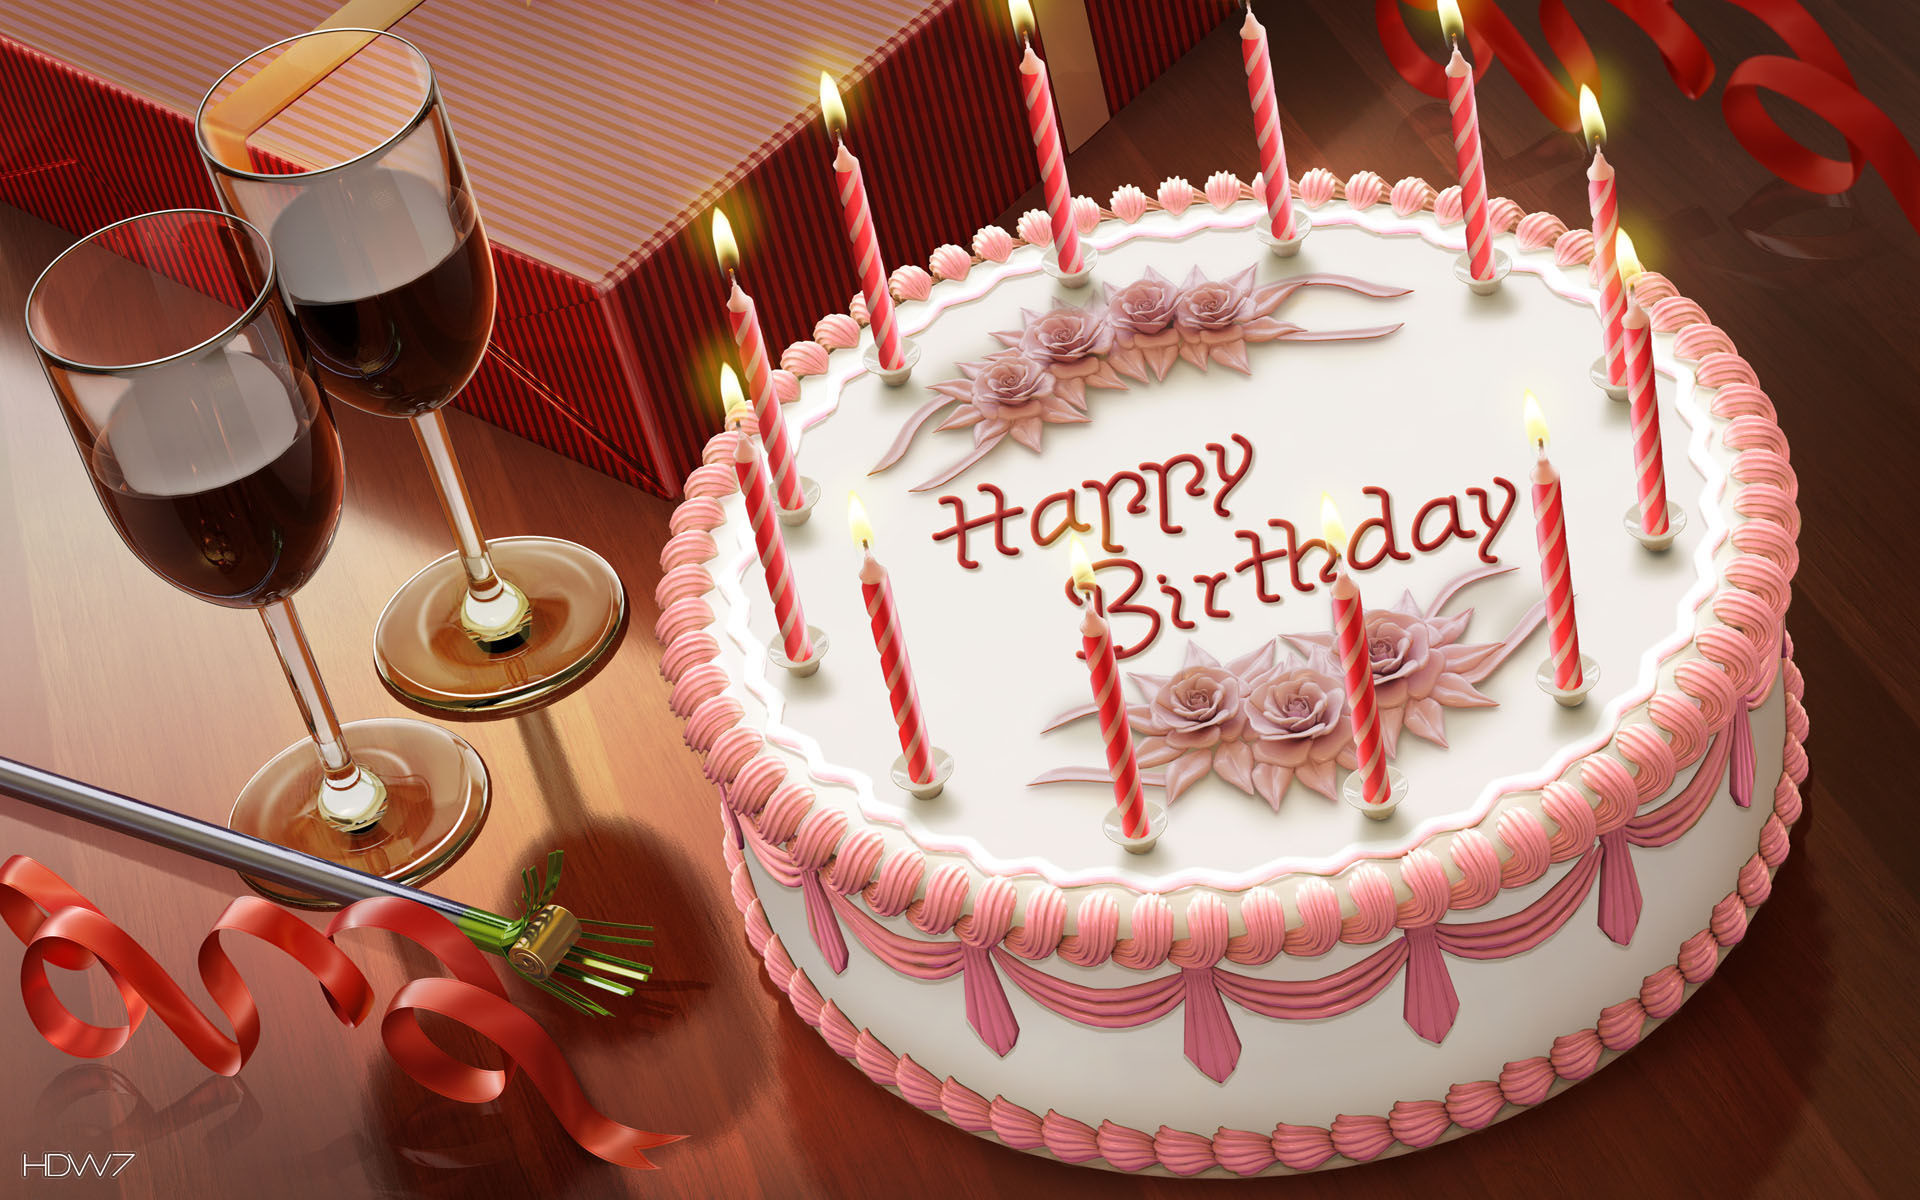 1920x1200 happy birthday cake candles wine romantic